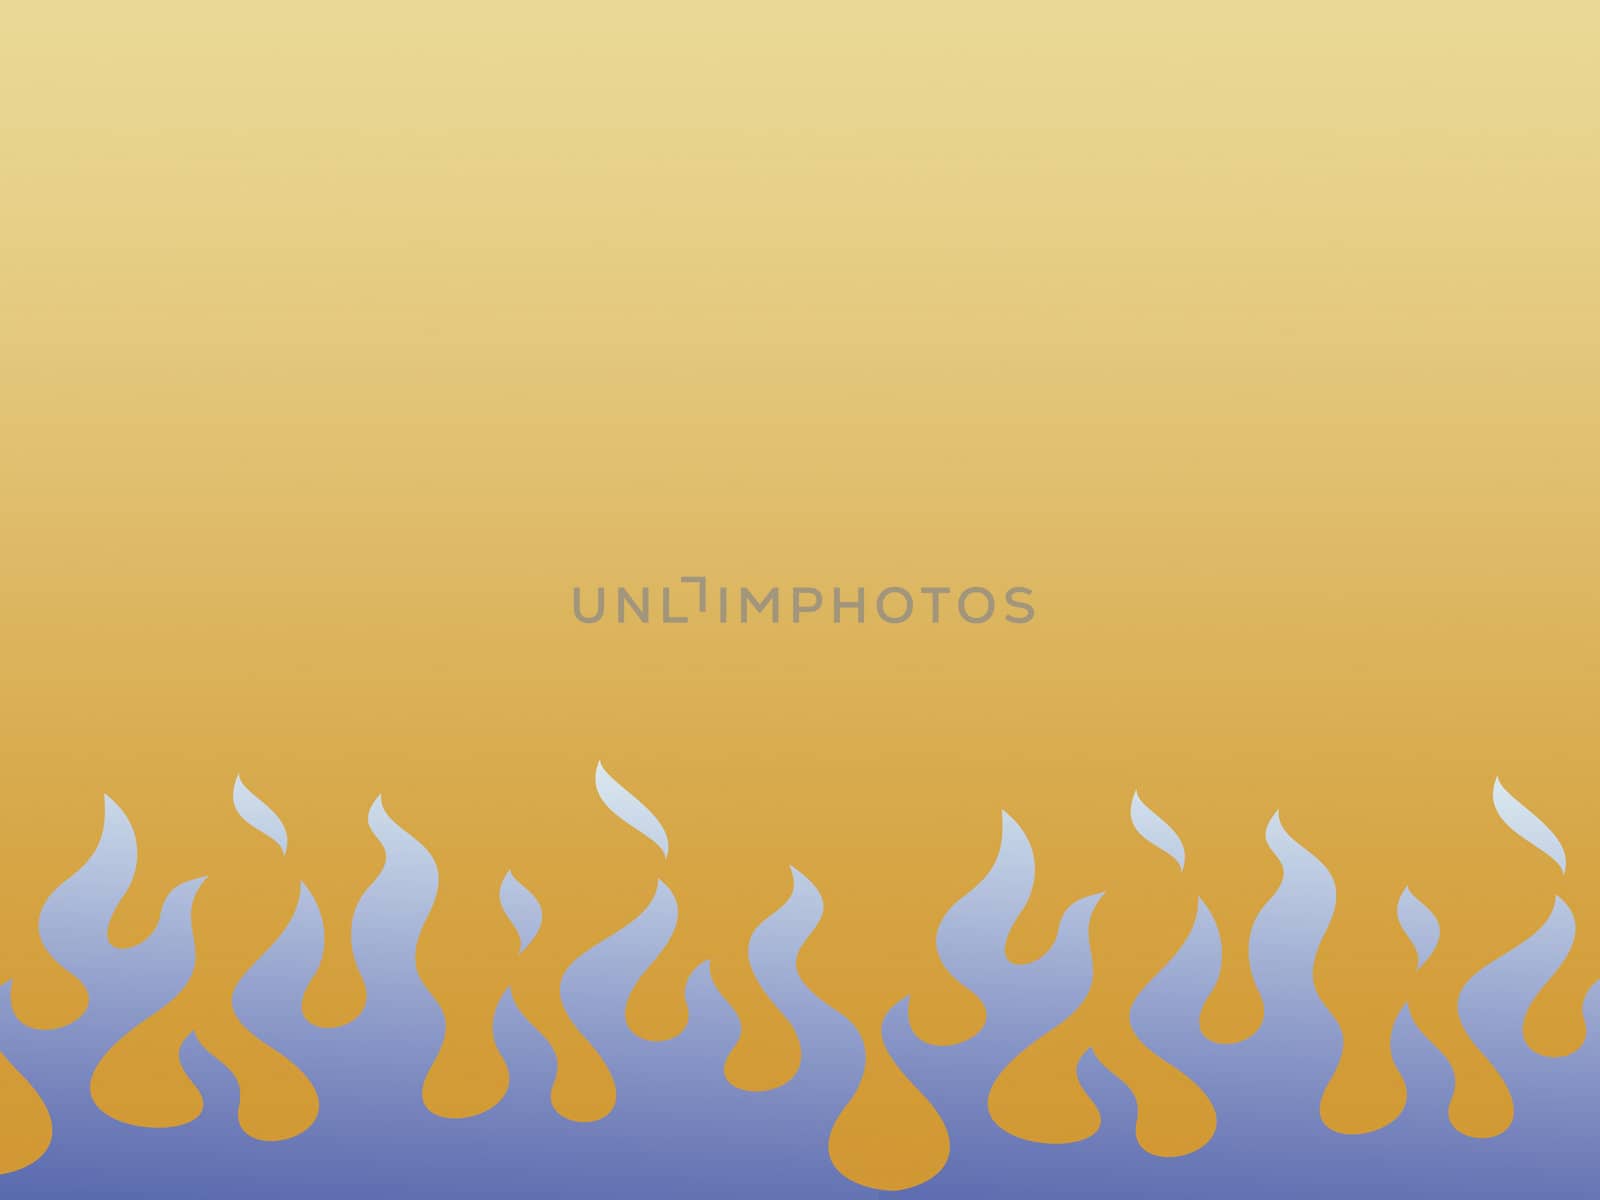 Blue flames against orange background. Illustration.